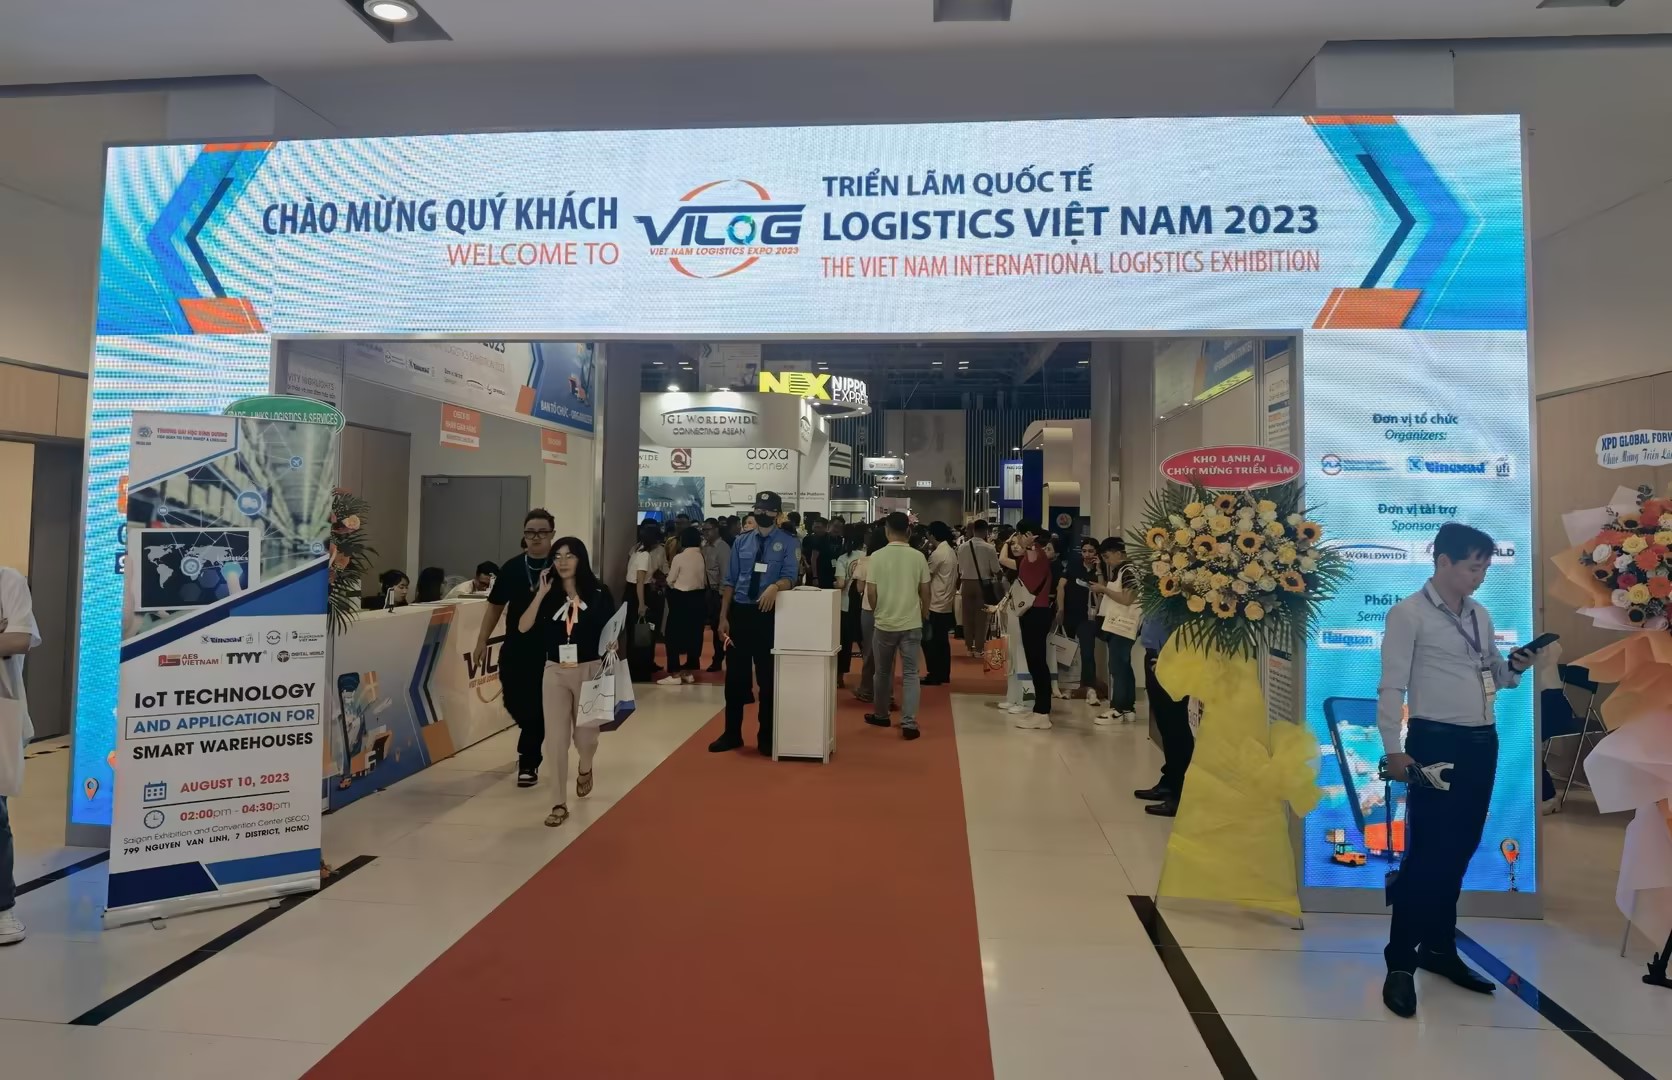 August Exhibition Express: Vietnam, Thailand Logistics Exhibition